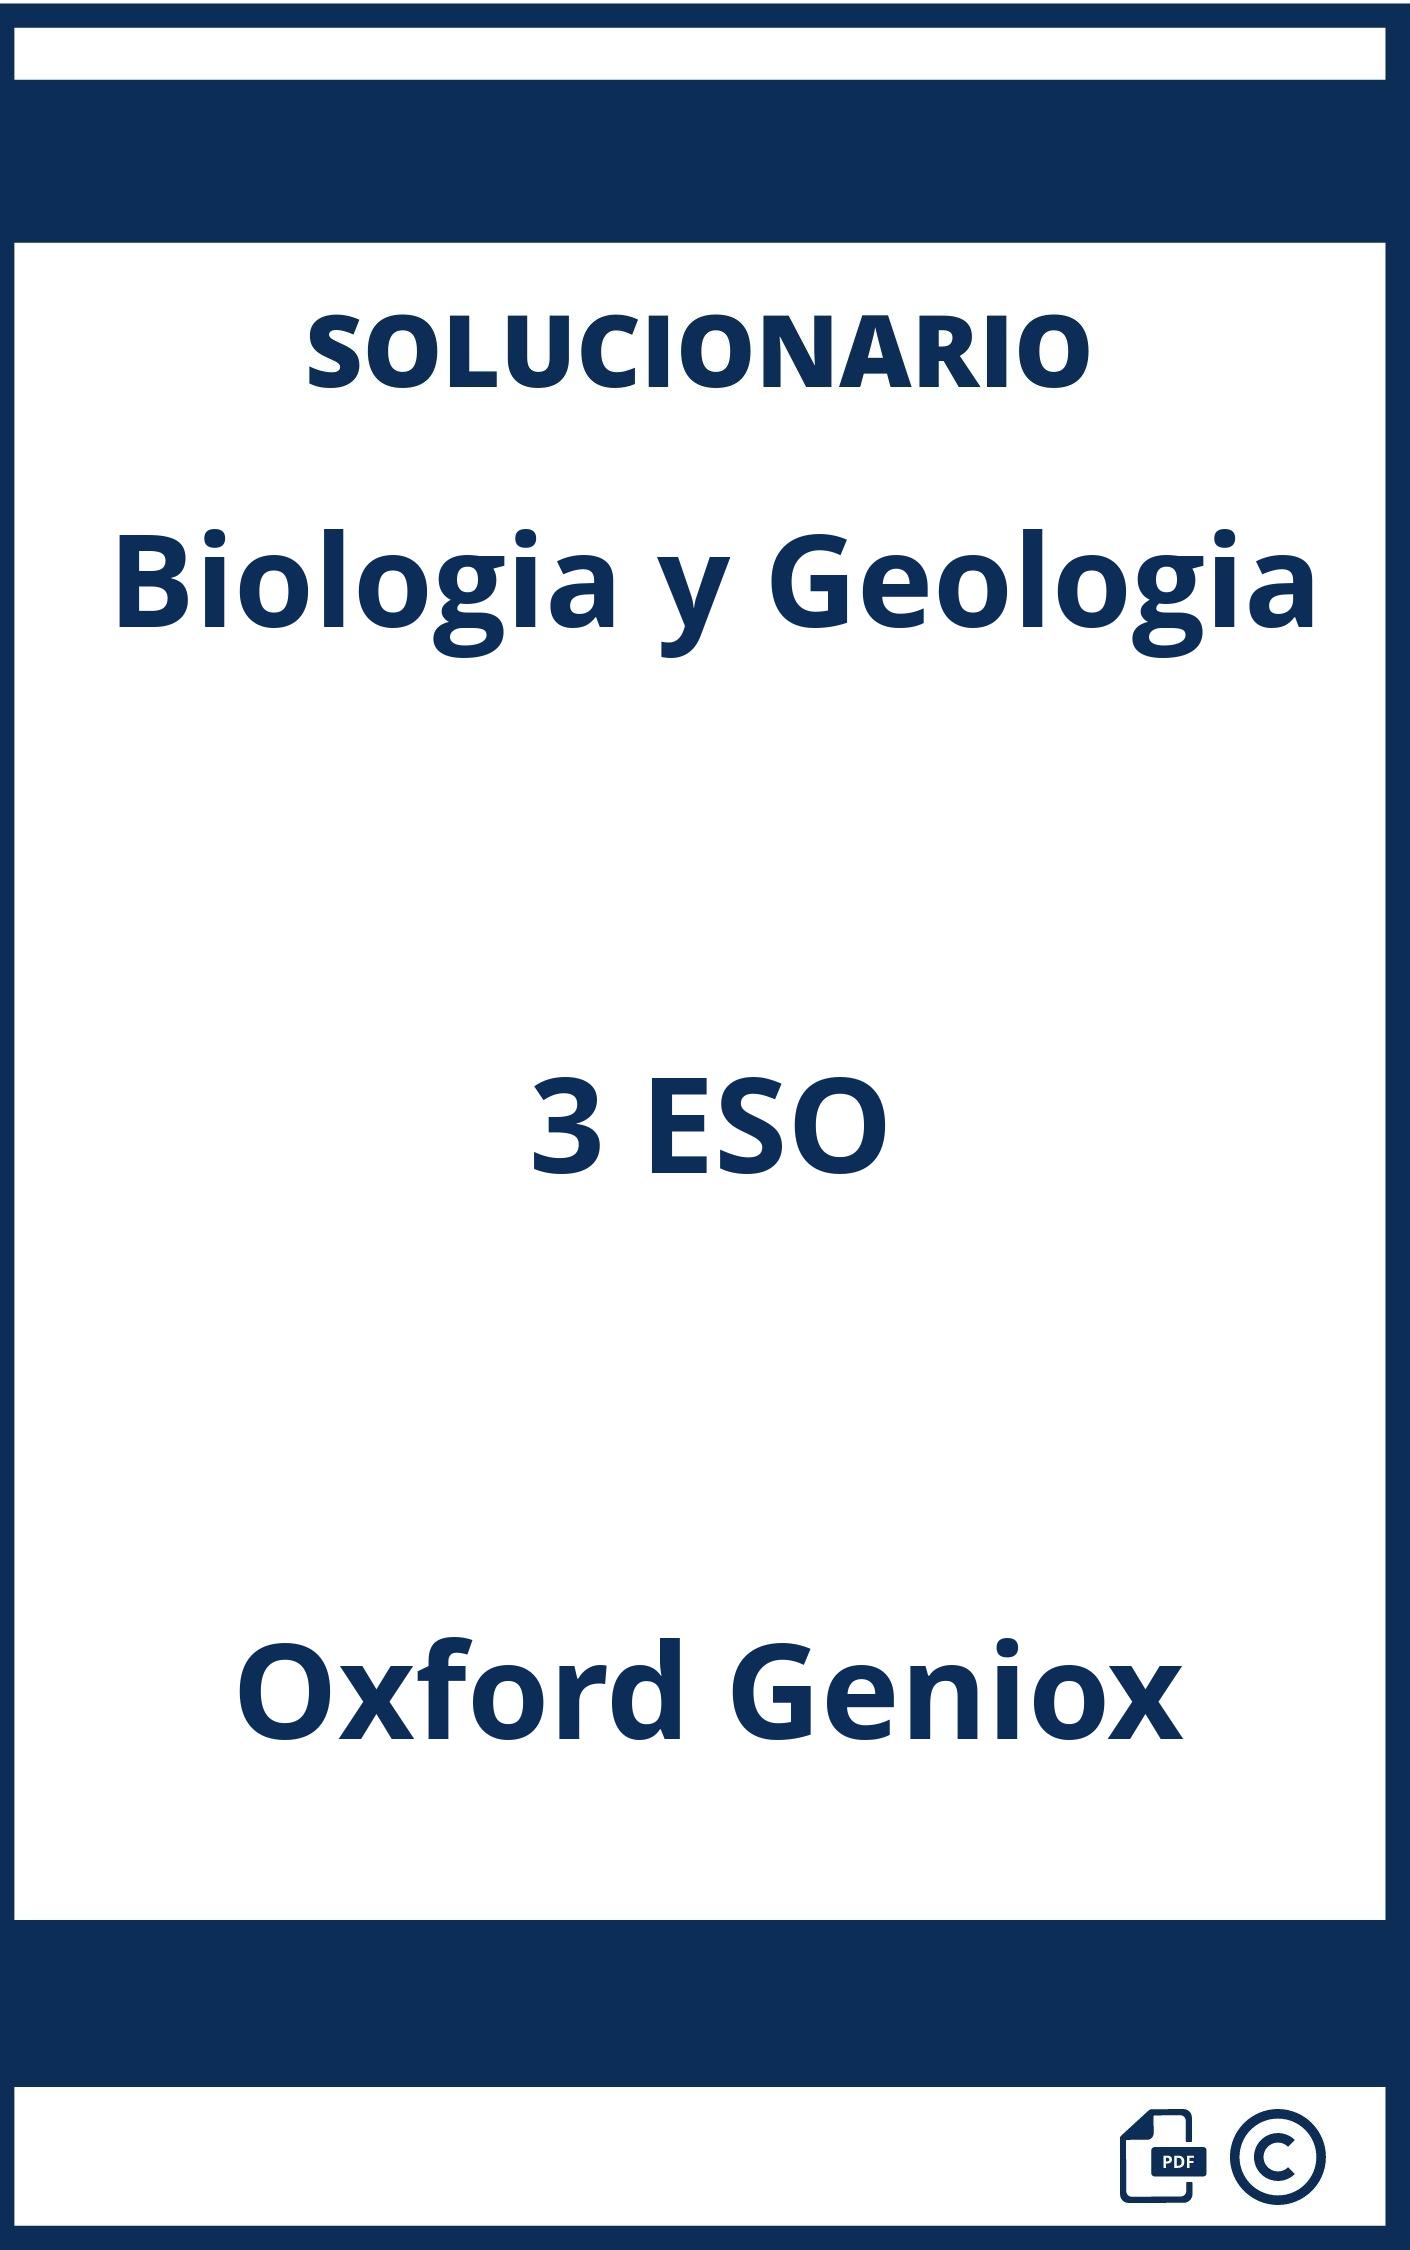 Solucionario Biologia y Geologia 3 ESO Oxford Geniox